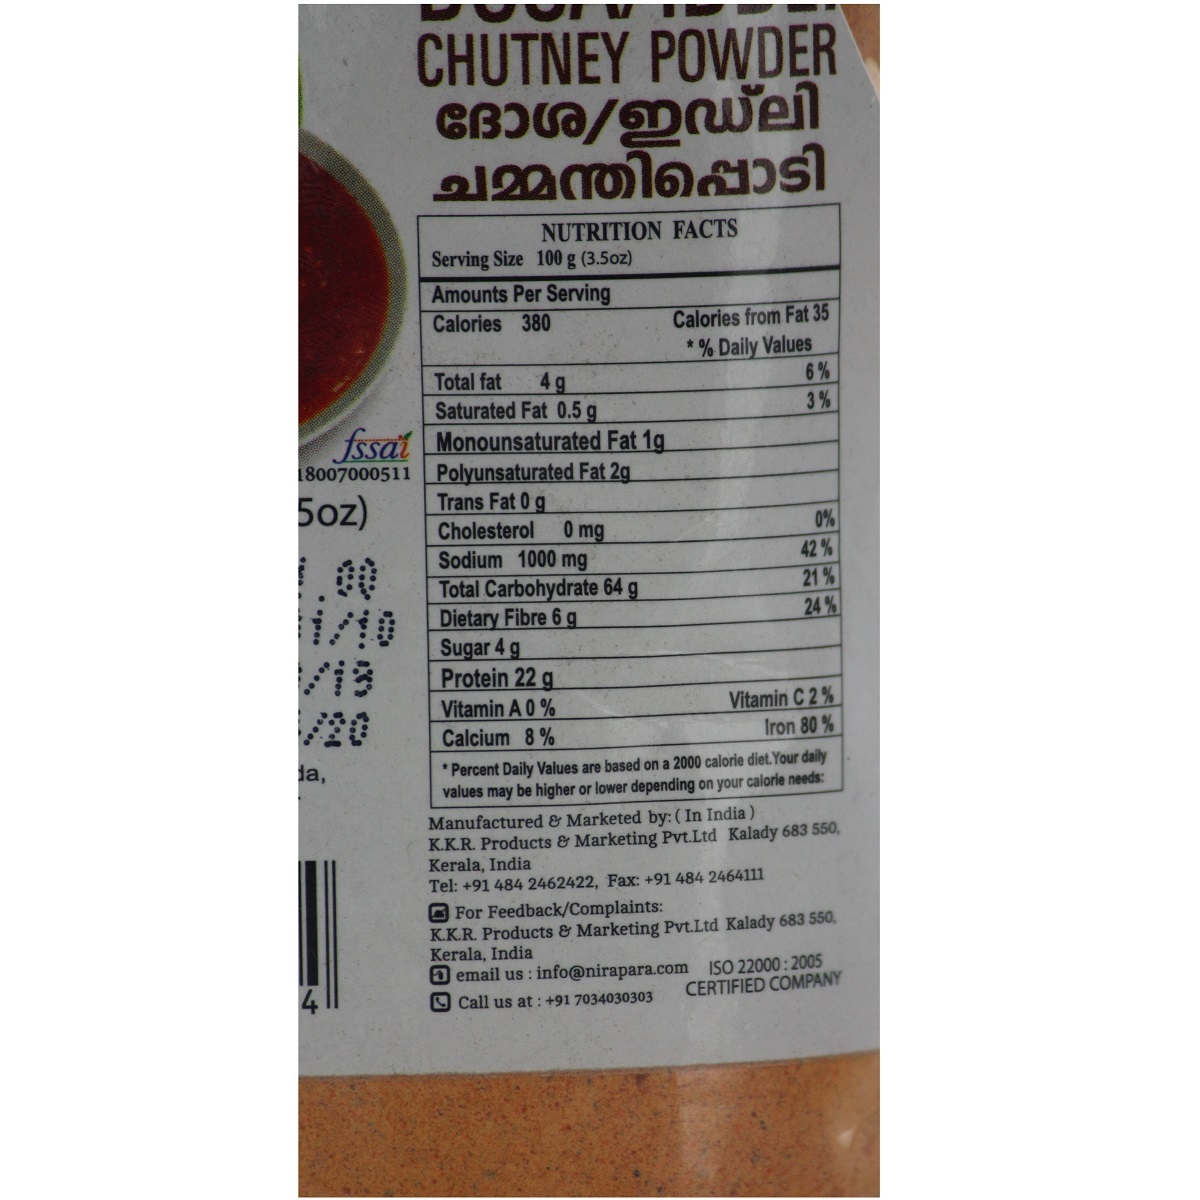 Nirapara Chutney Powder 100g